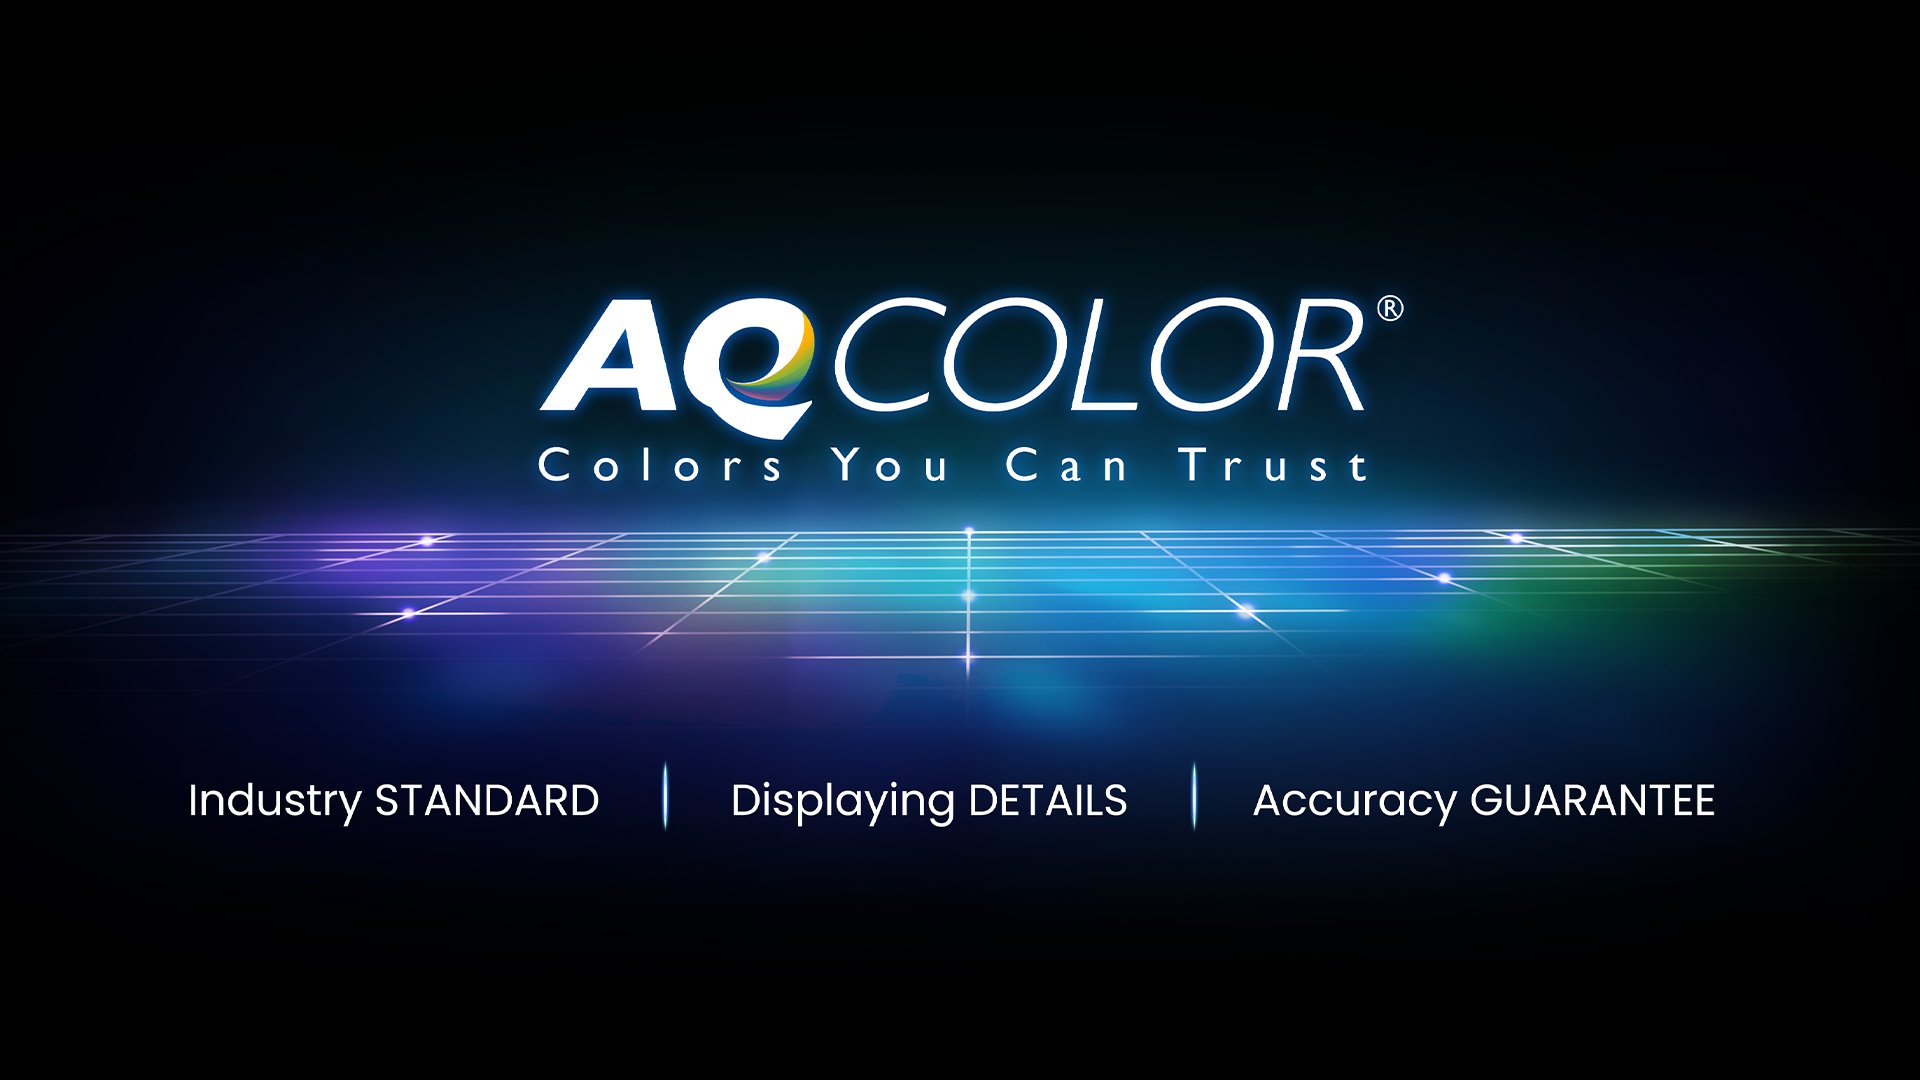 Die AQCOLOR-Technologie von BenQ sorgt für eine akkurate Farbwiedergabe. Das bedeutet, dass die Farbe genau so angezeigt wird, wie sie erscheinen soll. Unter der Leitung eines Farbexperten beteiligte sich das BenQ-Team an der ICC und ISO, um farbbezogene Standards und Implementierungsrichtlinien festzulegen.